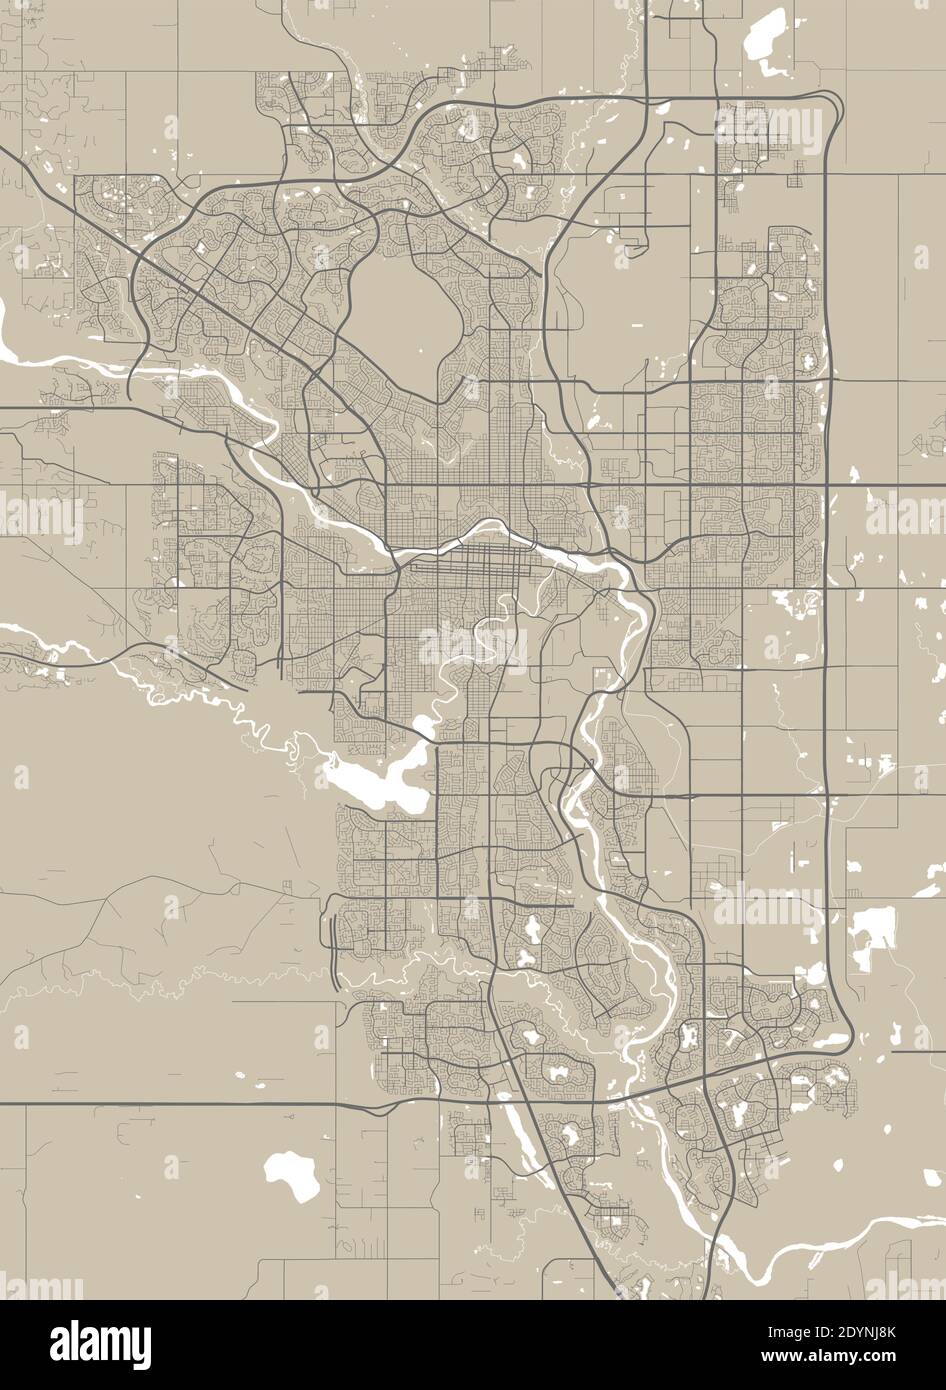 Detaillierte Karte des Verwaltungsgebiets der Stadt Calgary. Lizenzfreie Vektorgrafik. Stadtbild-Panorama. Stock Vektor